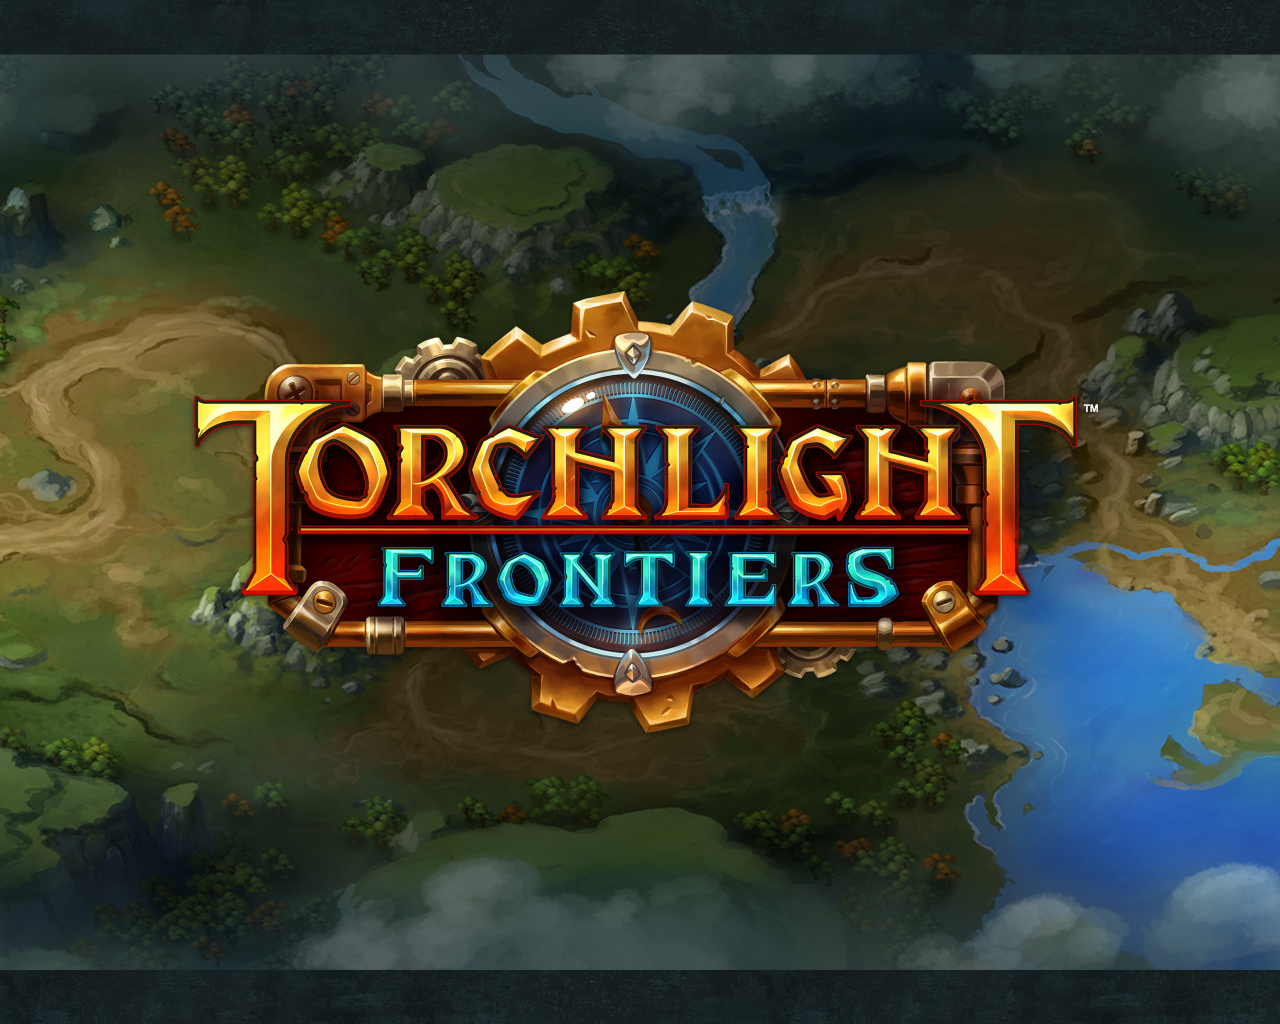 Логотип компьютерной игры Torchlight Frontiers, 2019